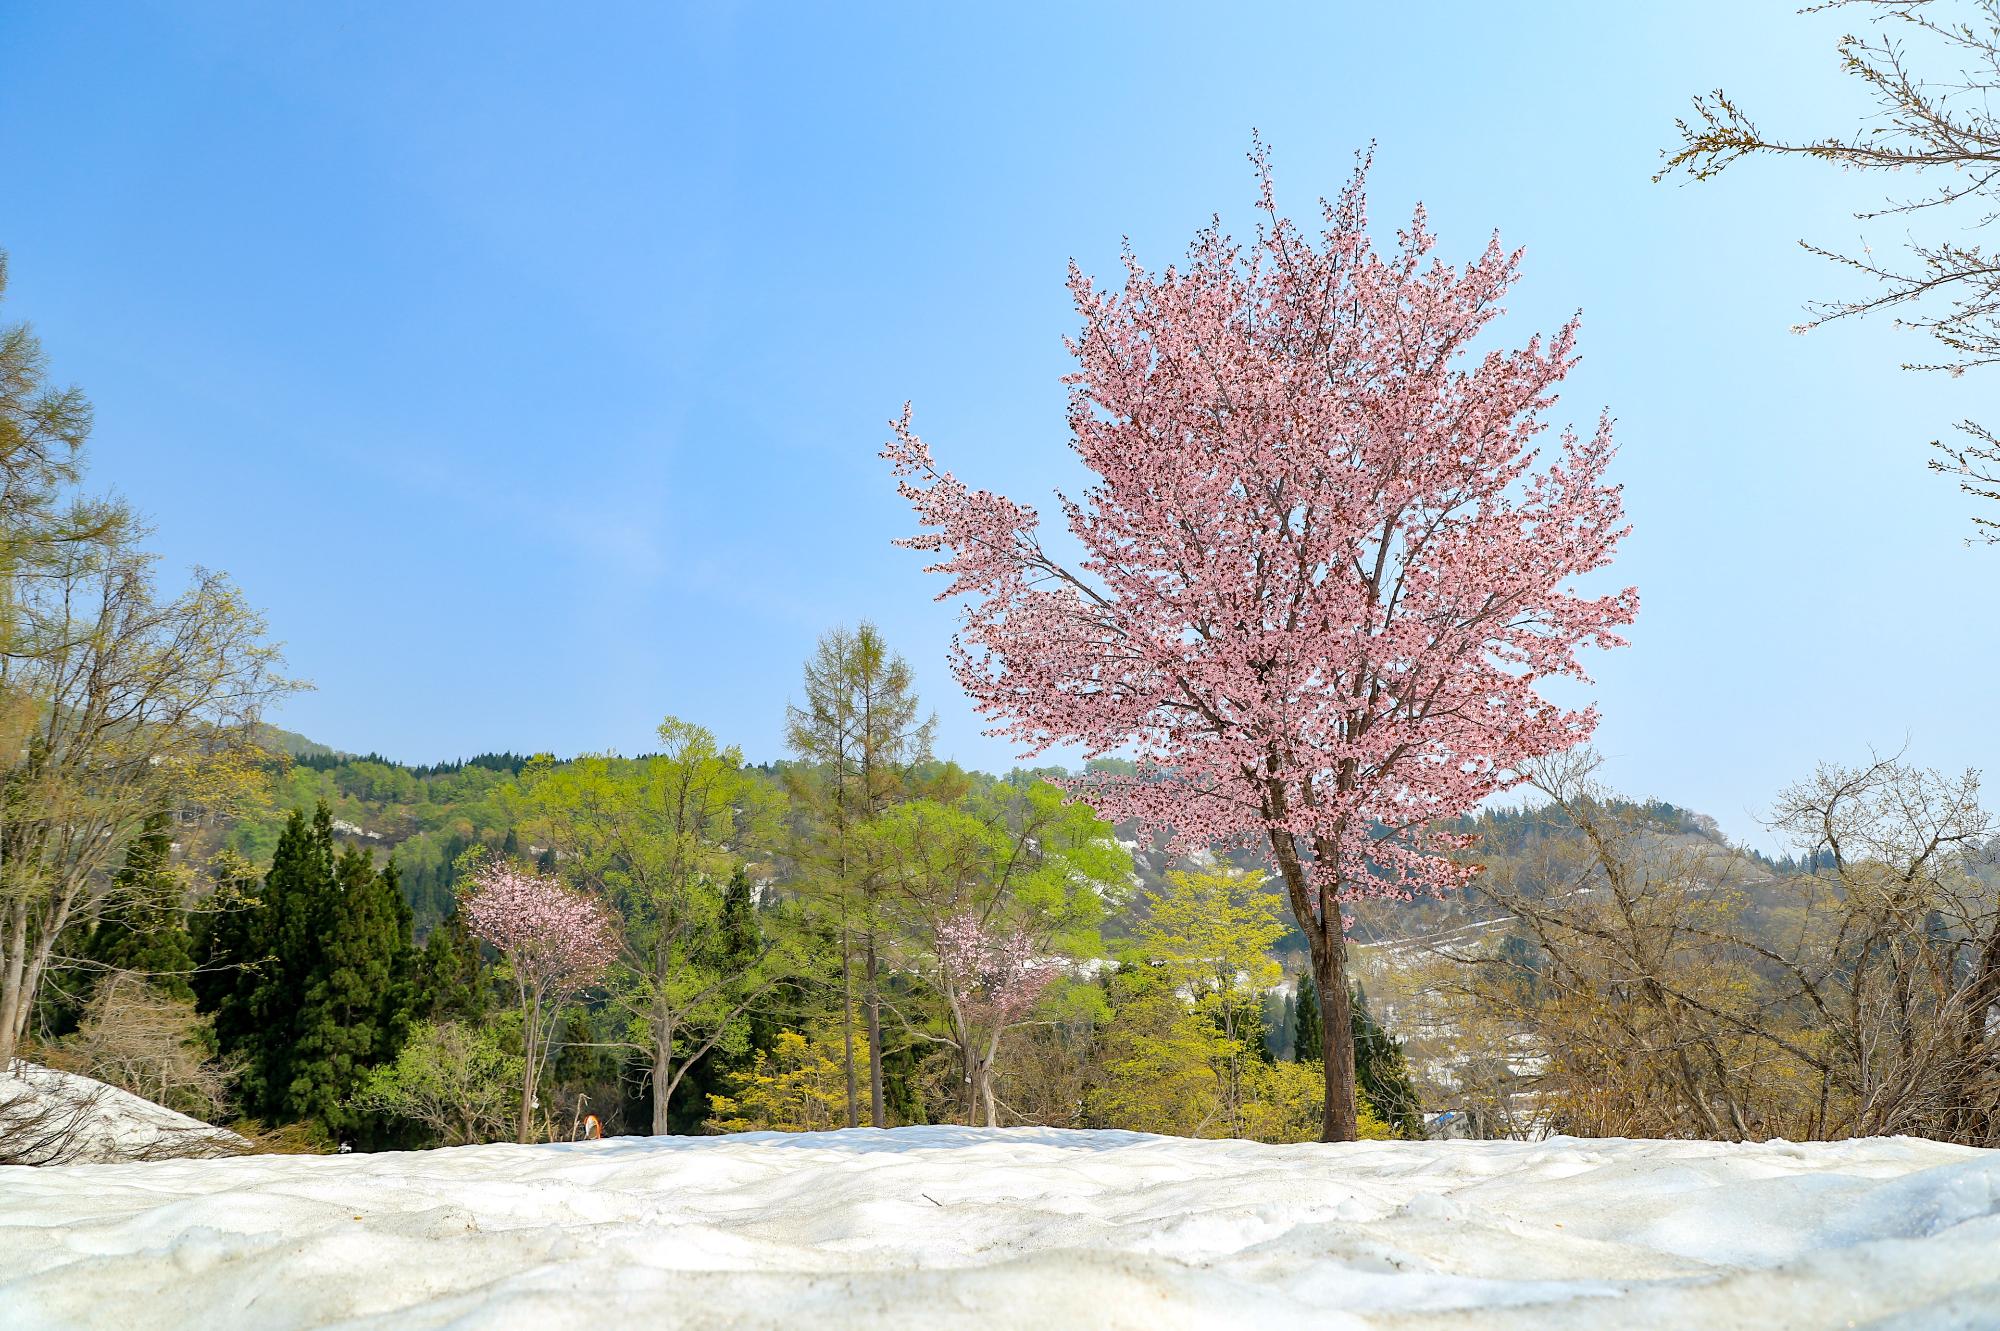 地面にまだ雪が残るなか、濃いピンク色の桜が咲いている写真